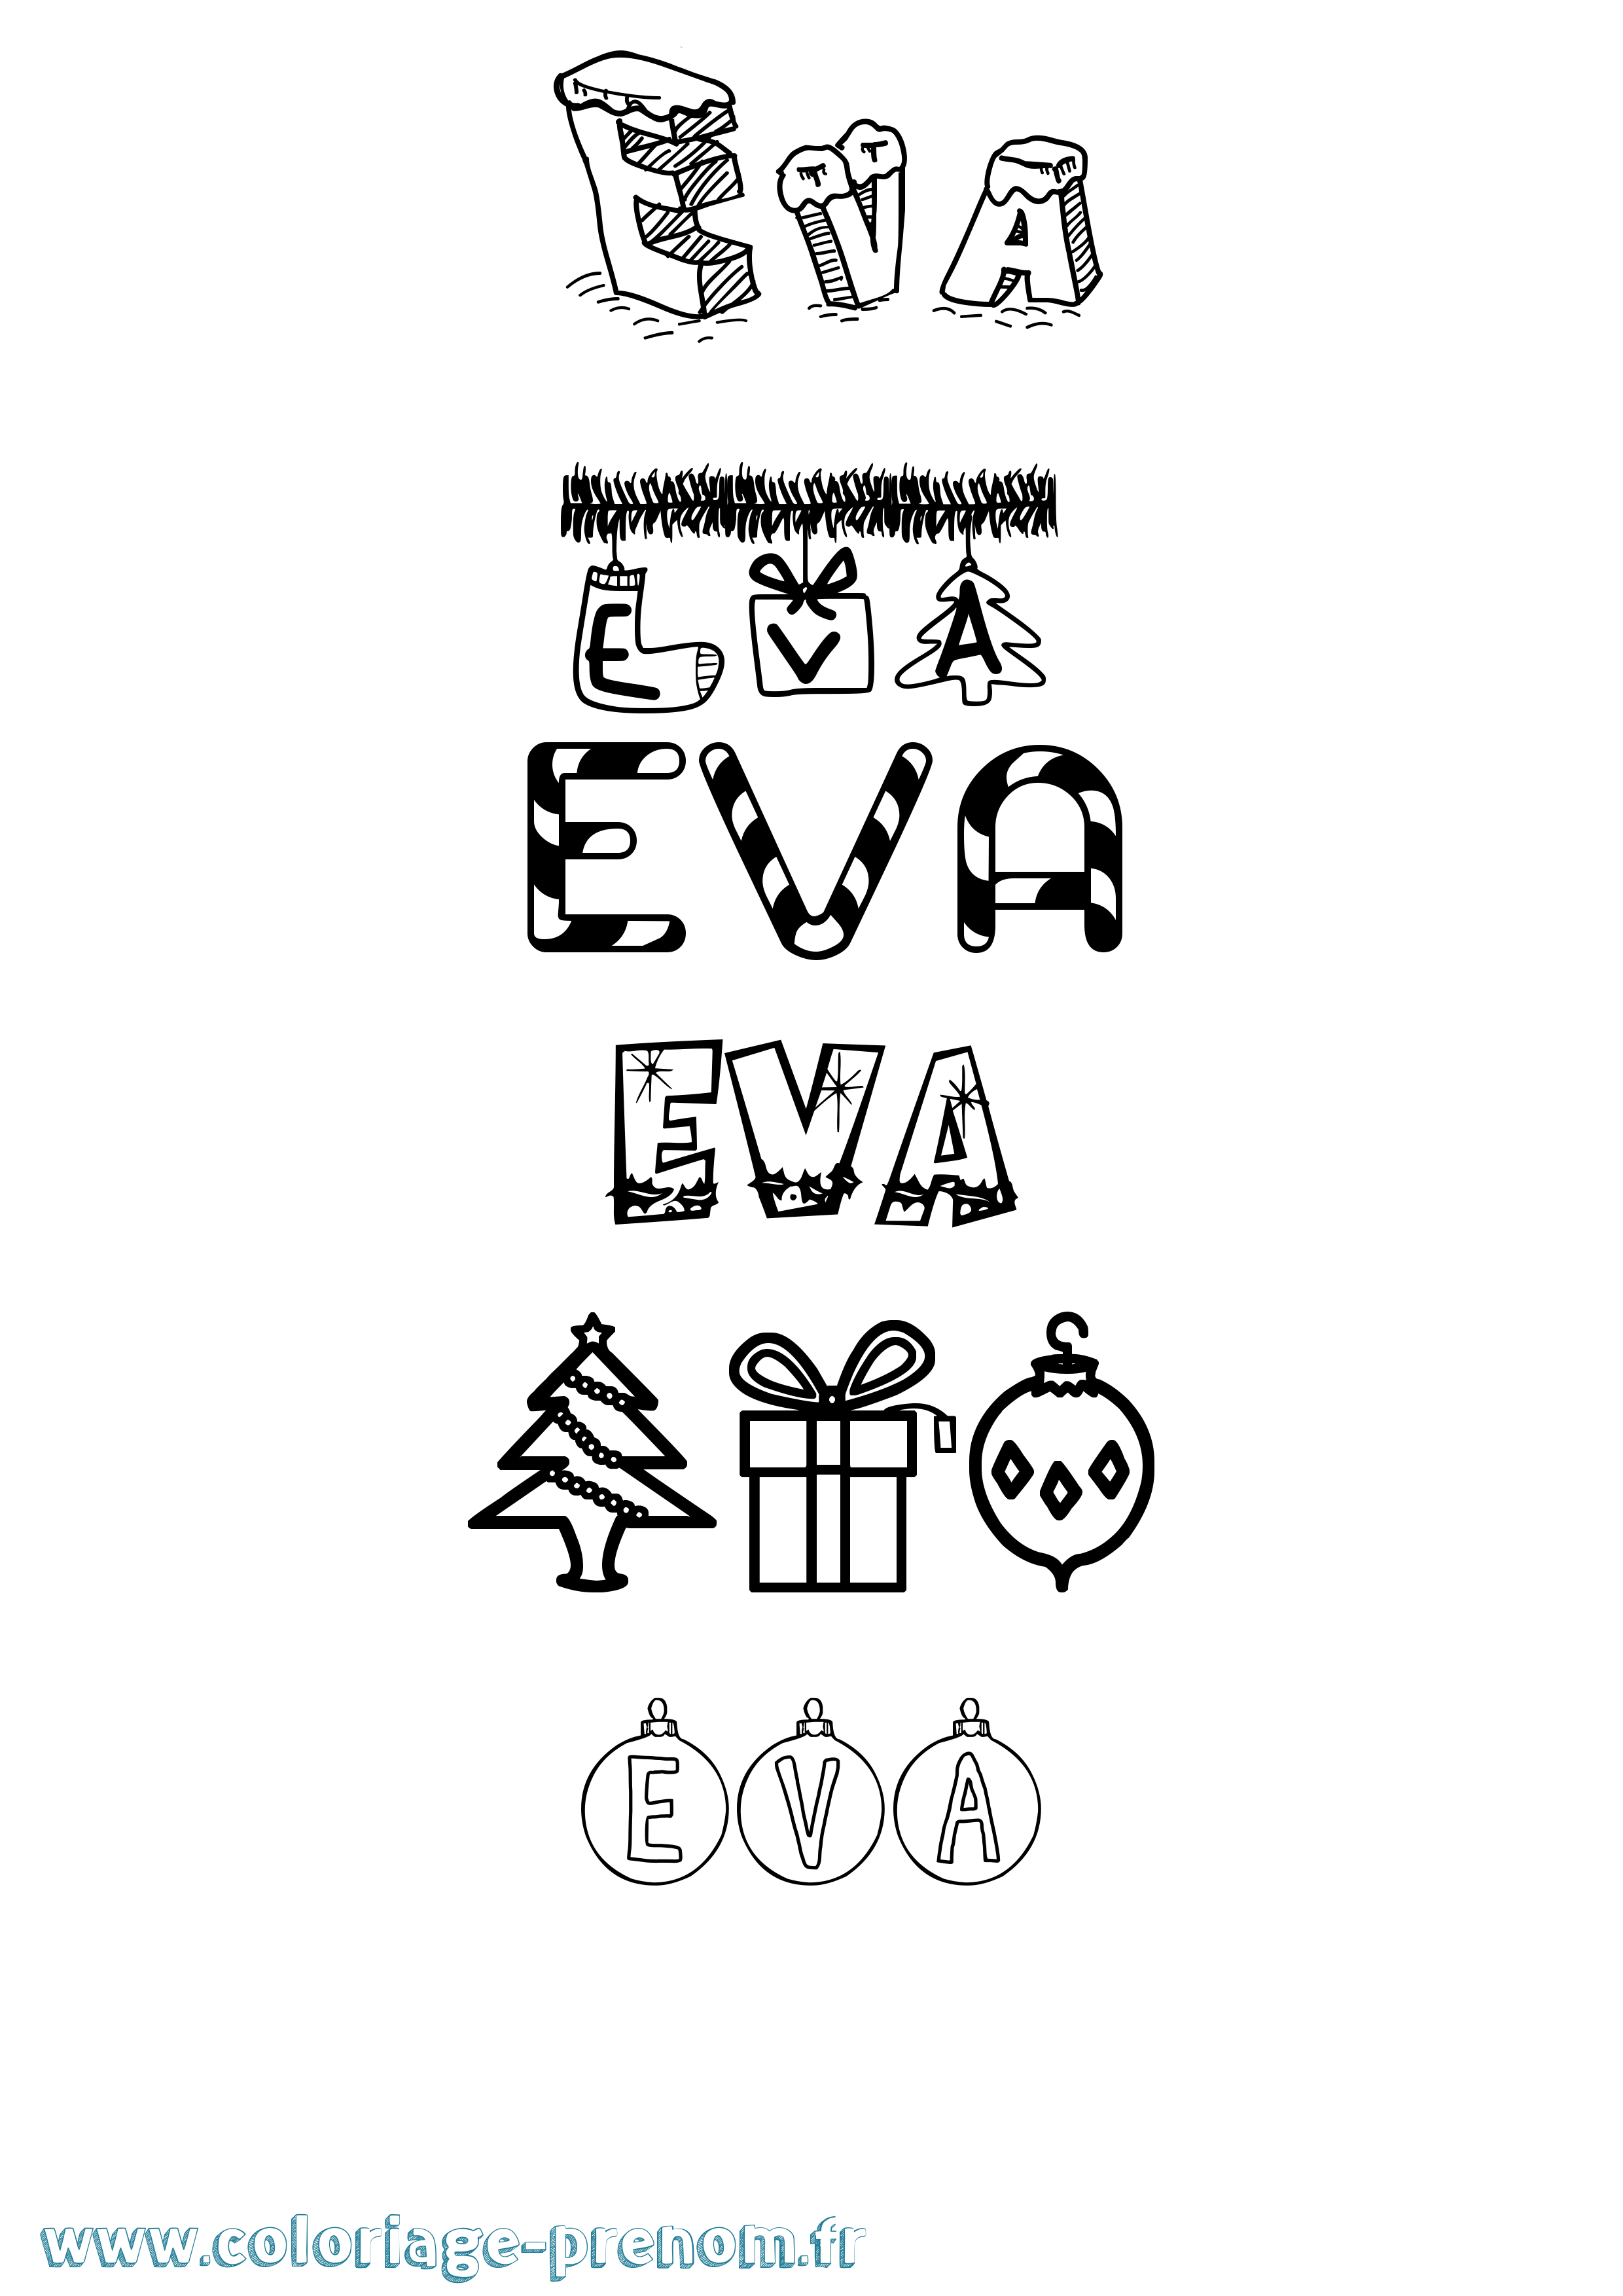 Coloriage prénom Eva